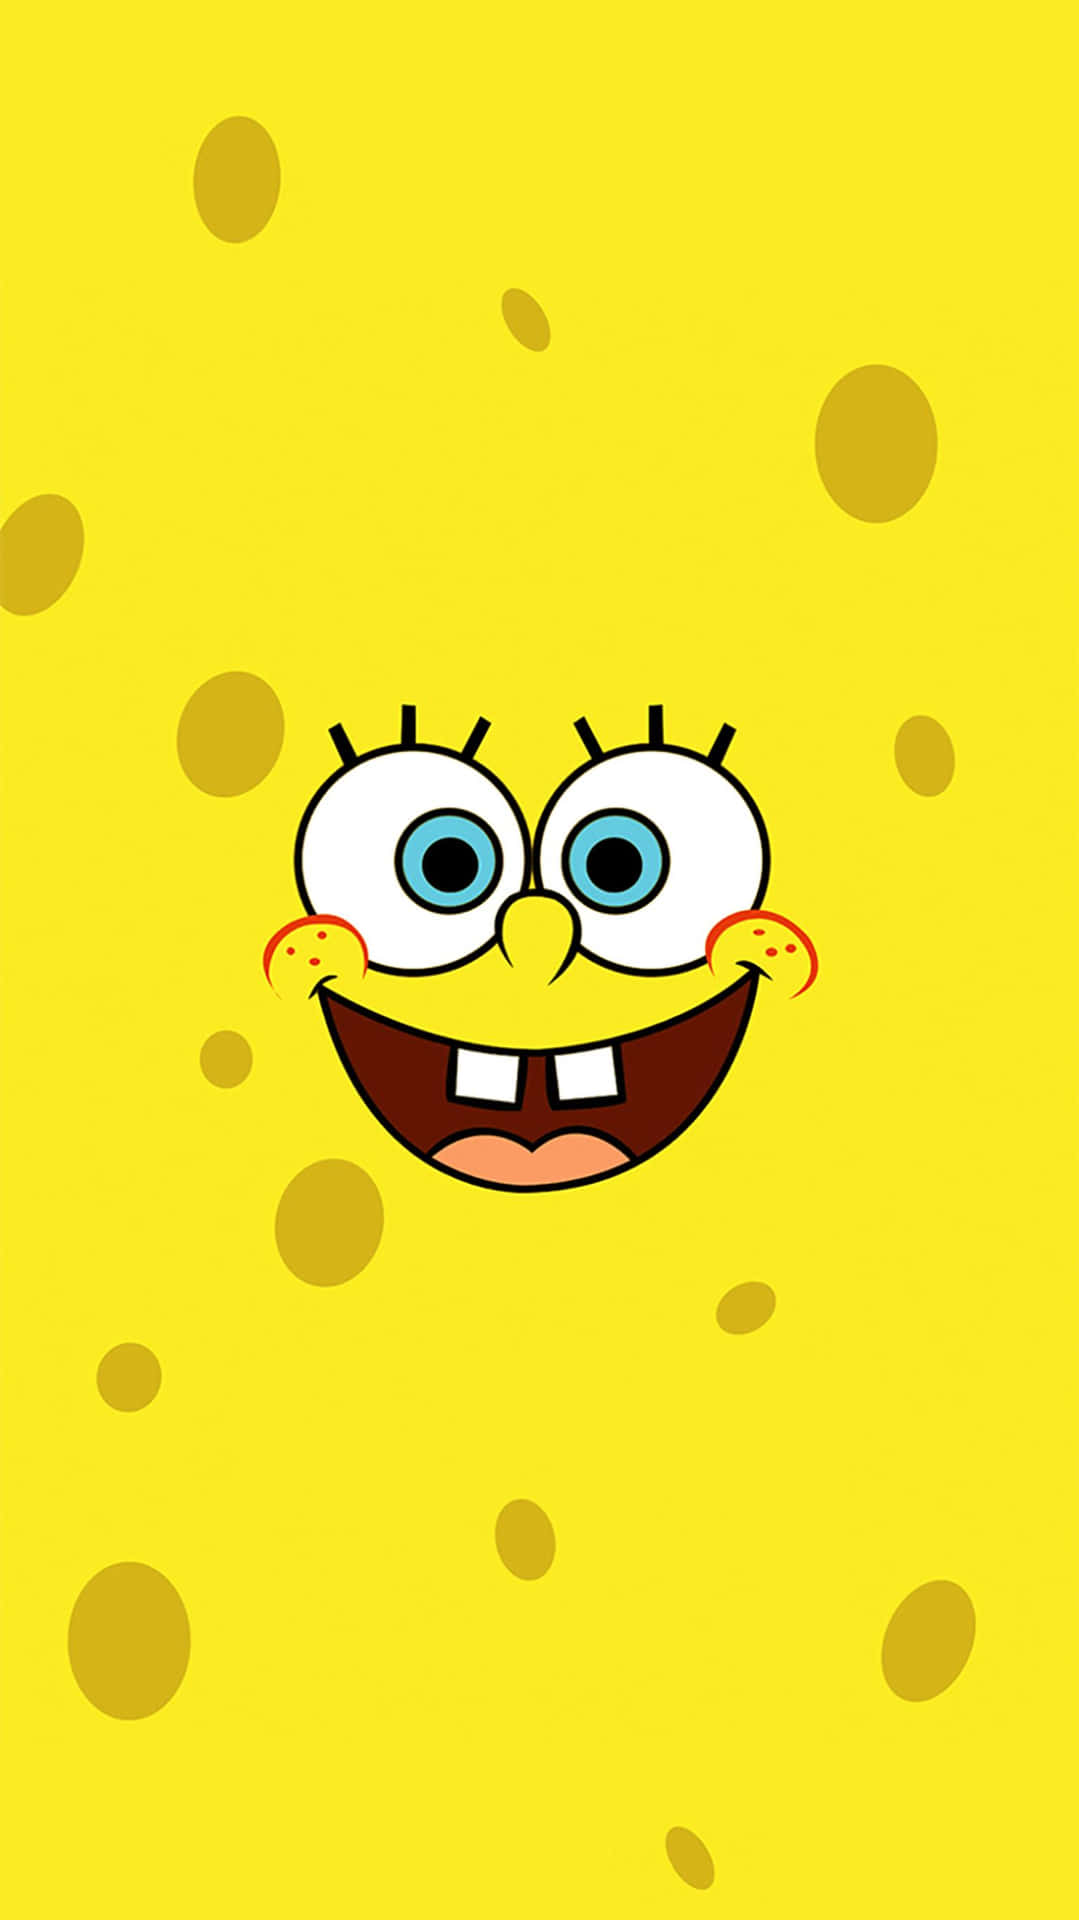 Spongebob Iphone Wallpaper